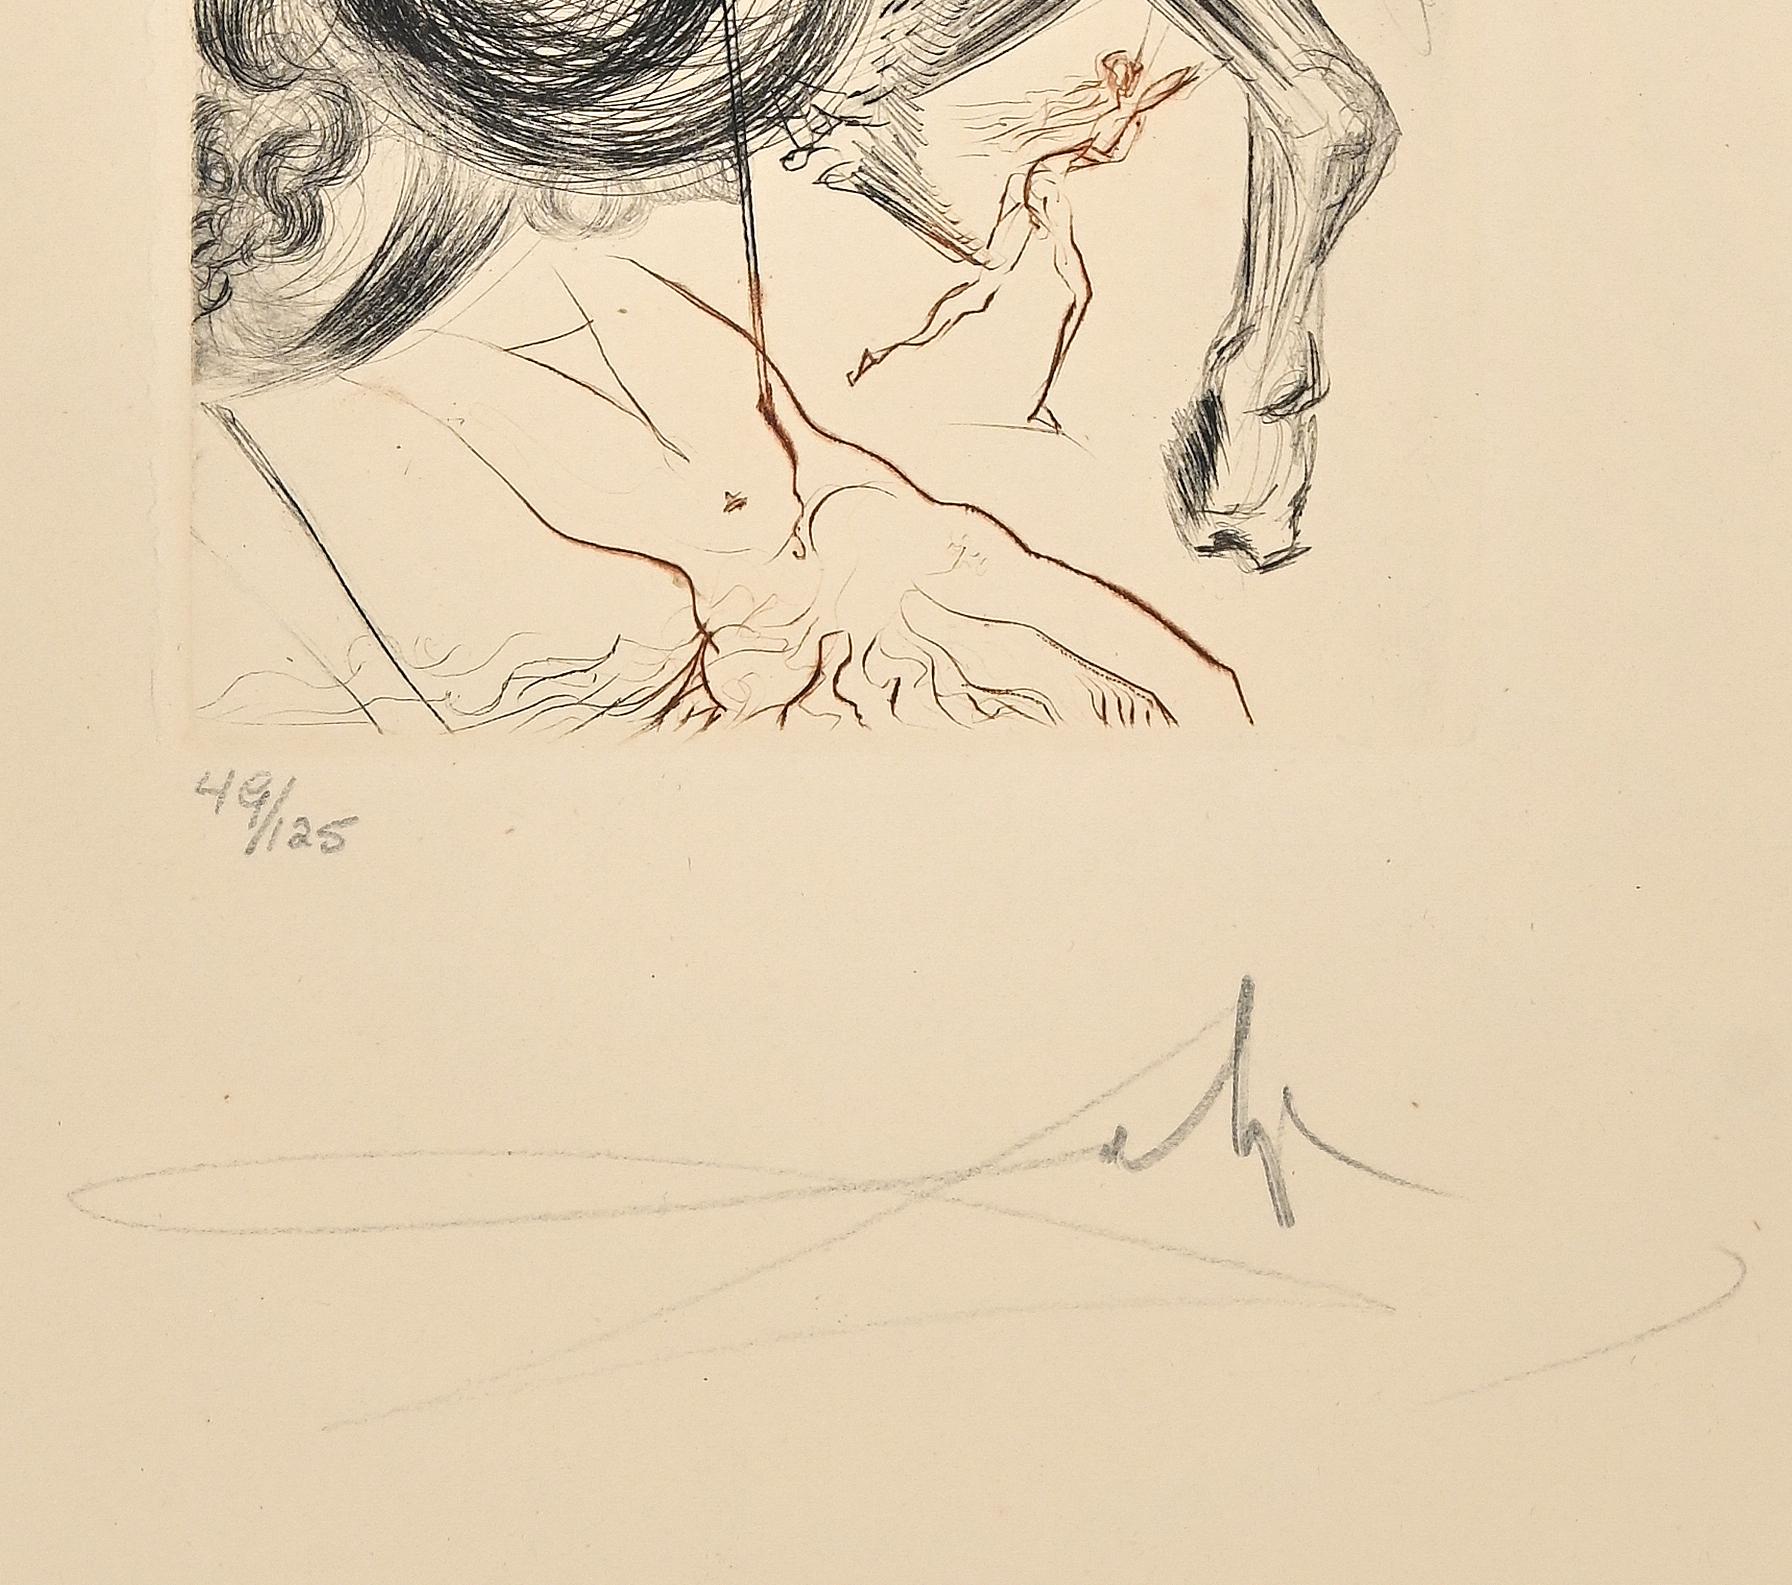 L'enfer des beautés cruelles - Gravure et pointe sèche - 1972 - Print de Salvador Dalí